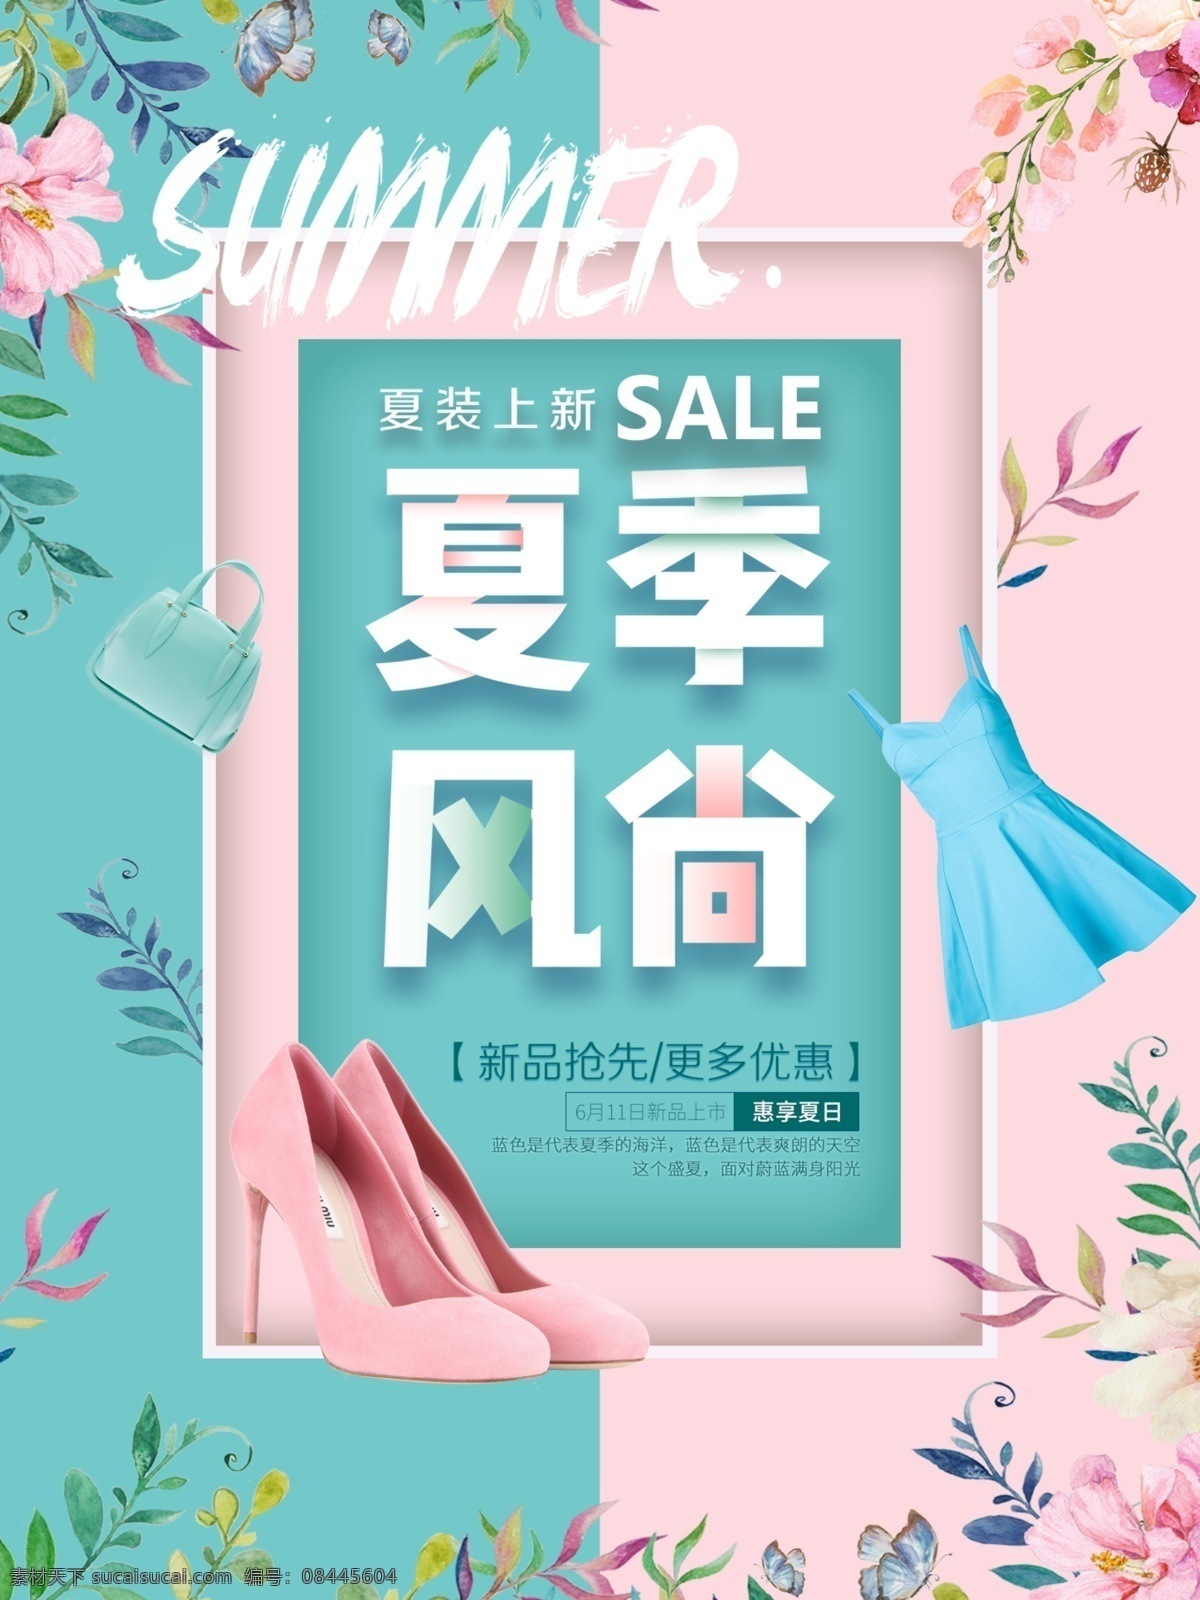 夏季风尚 夏季 夏天 风尚 上新 服装店 促销 活动 海报 展架 粉色系